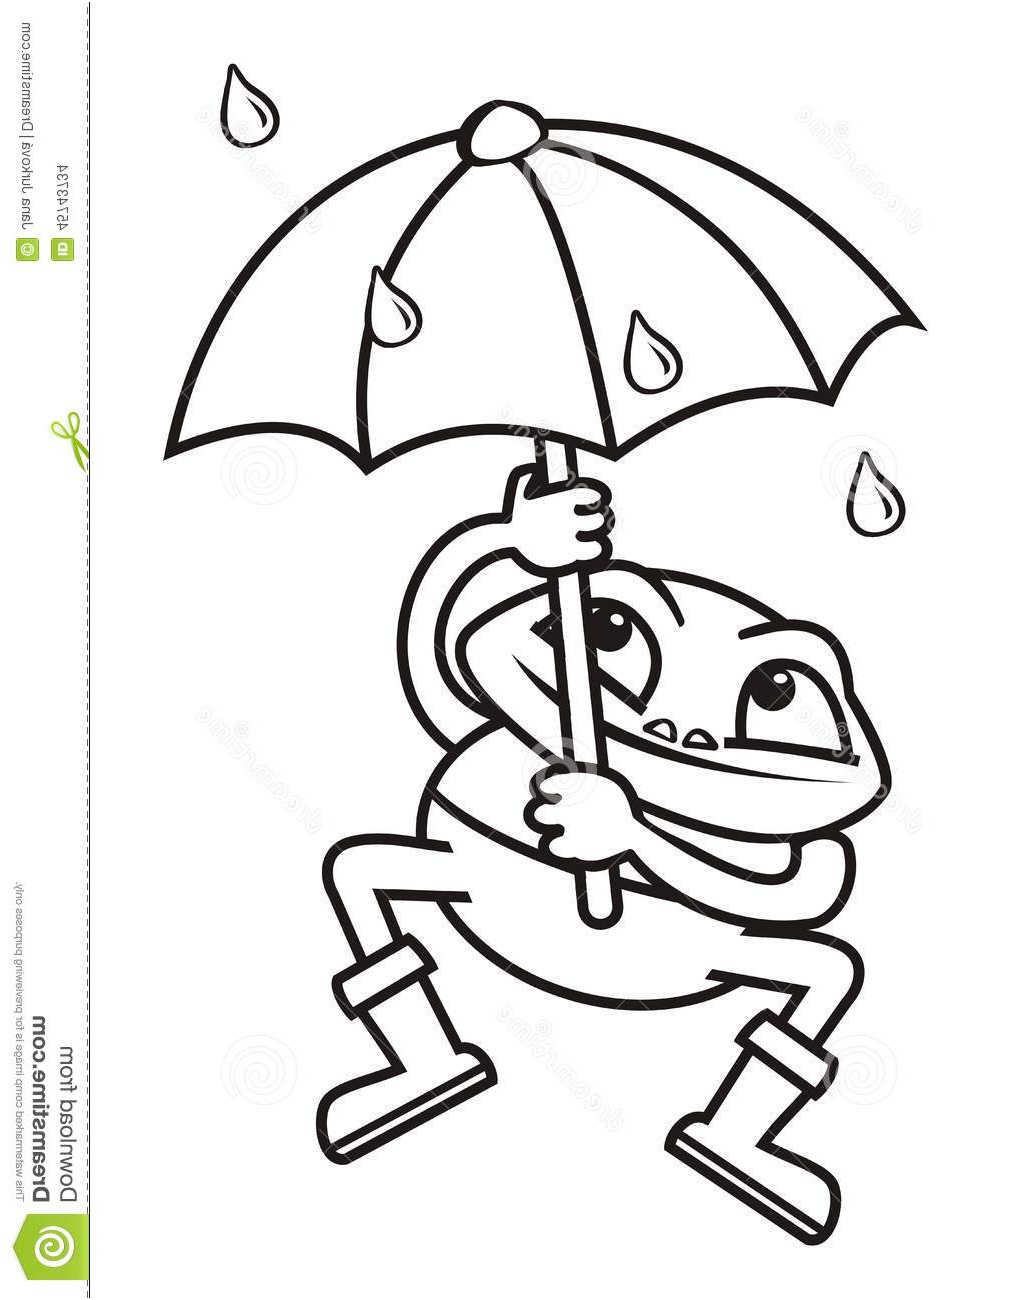 illustration stock grenouille et parapluie colorant image